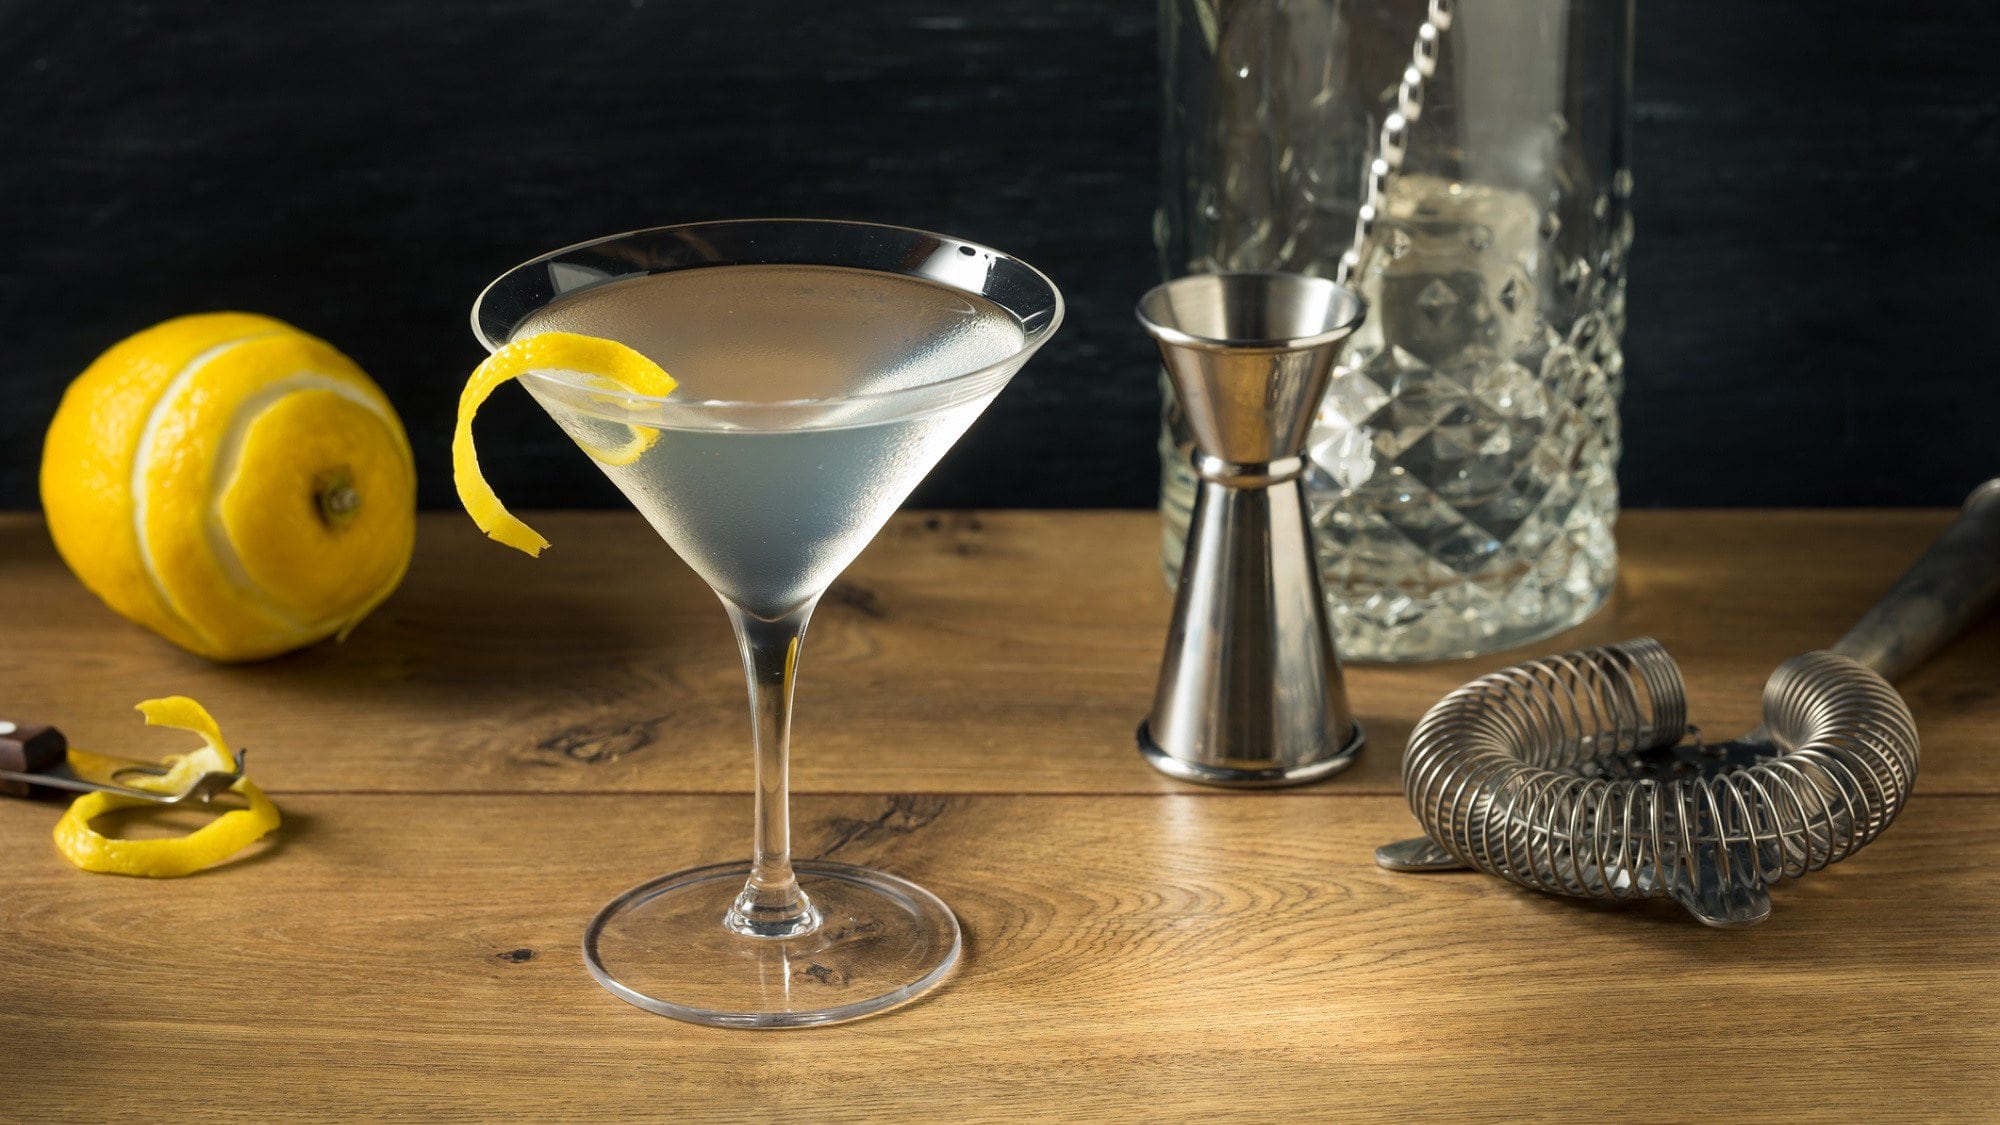 Ein Vesper Cocktail in einem Martini Glas steht auf einem dunklen Holztisch. Im Hintergrund liegen verschiedene Utensilien zum Mixen von Cocktails und eine Zitrone.